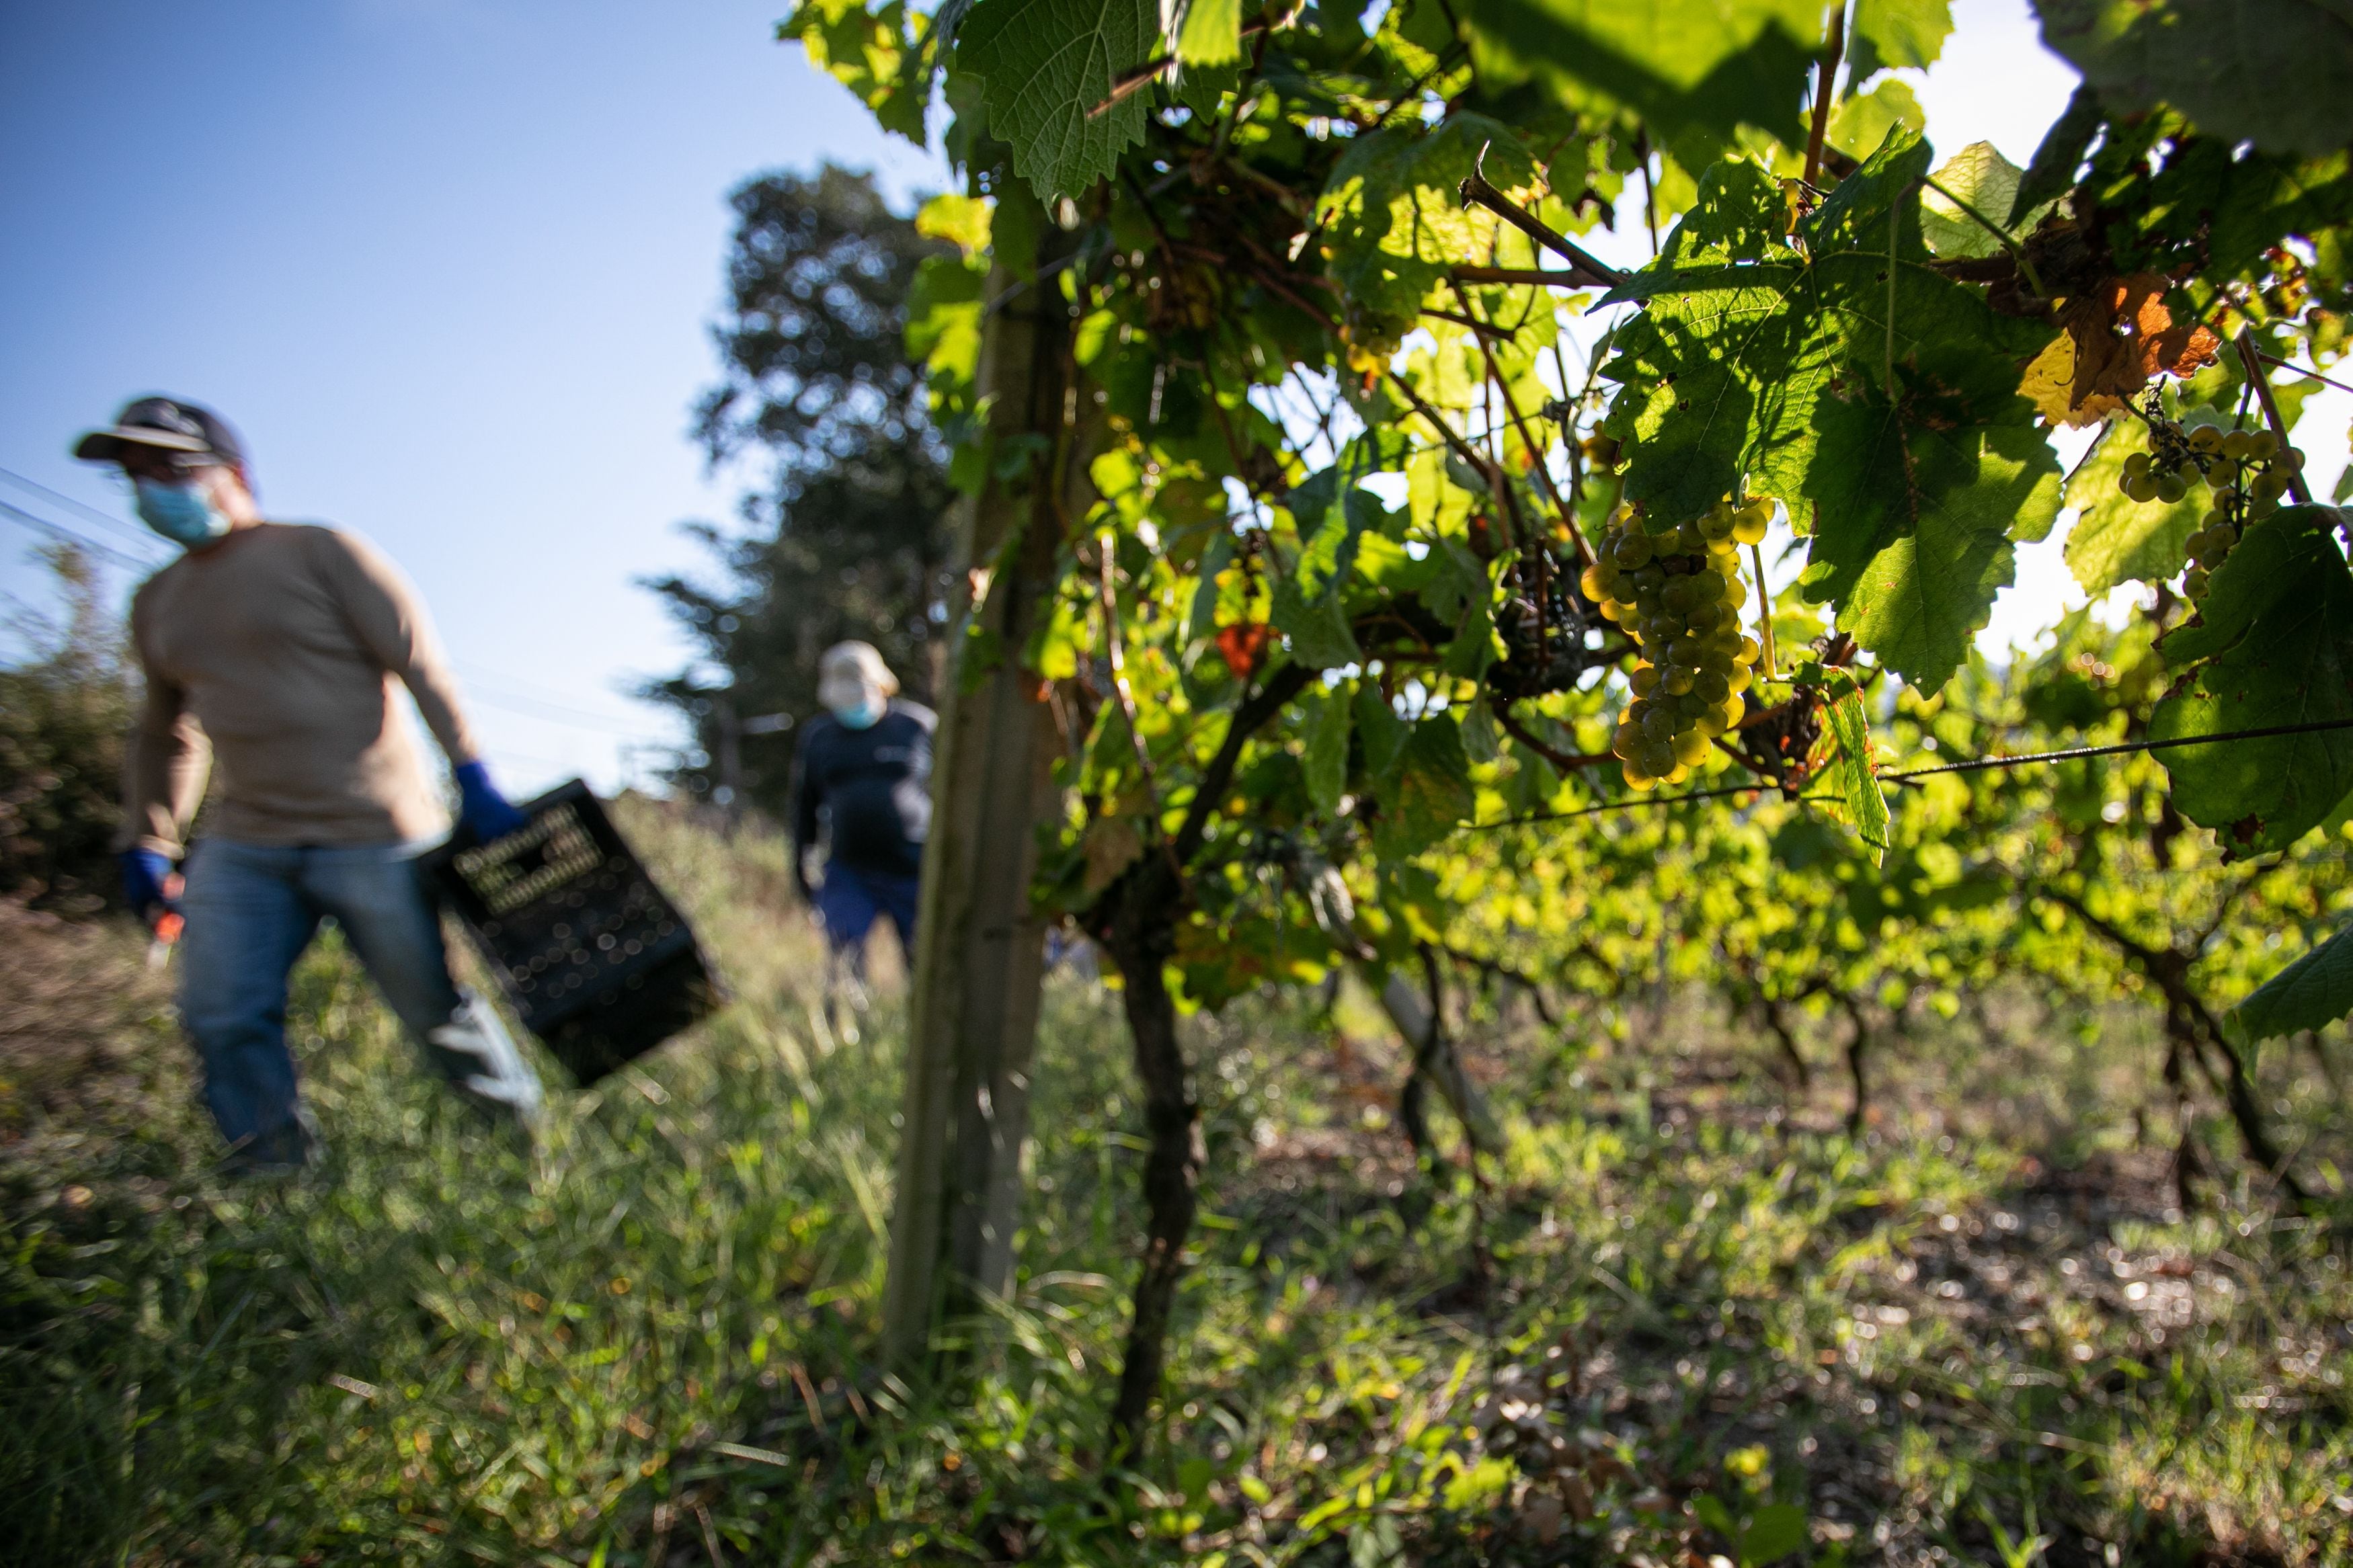  Un acuerdo sin precedentes en Mendoza para fijar el precio de la uva  